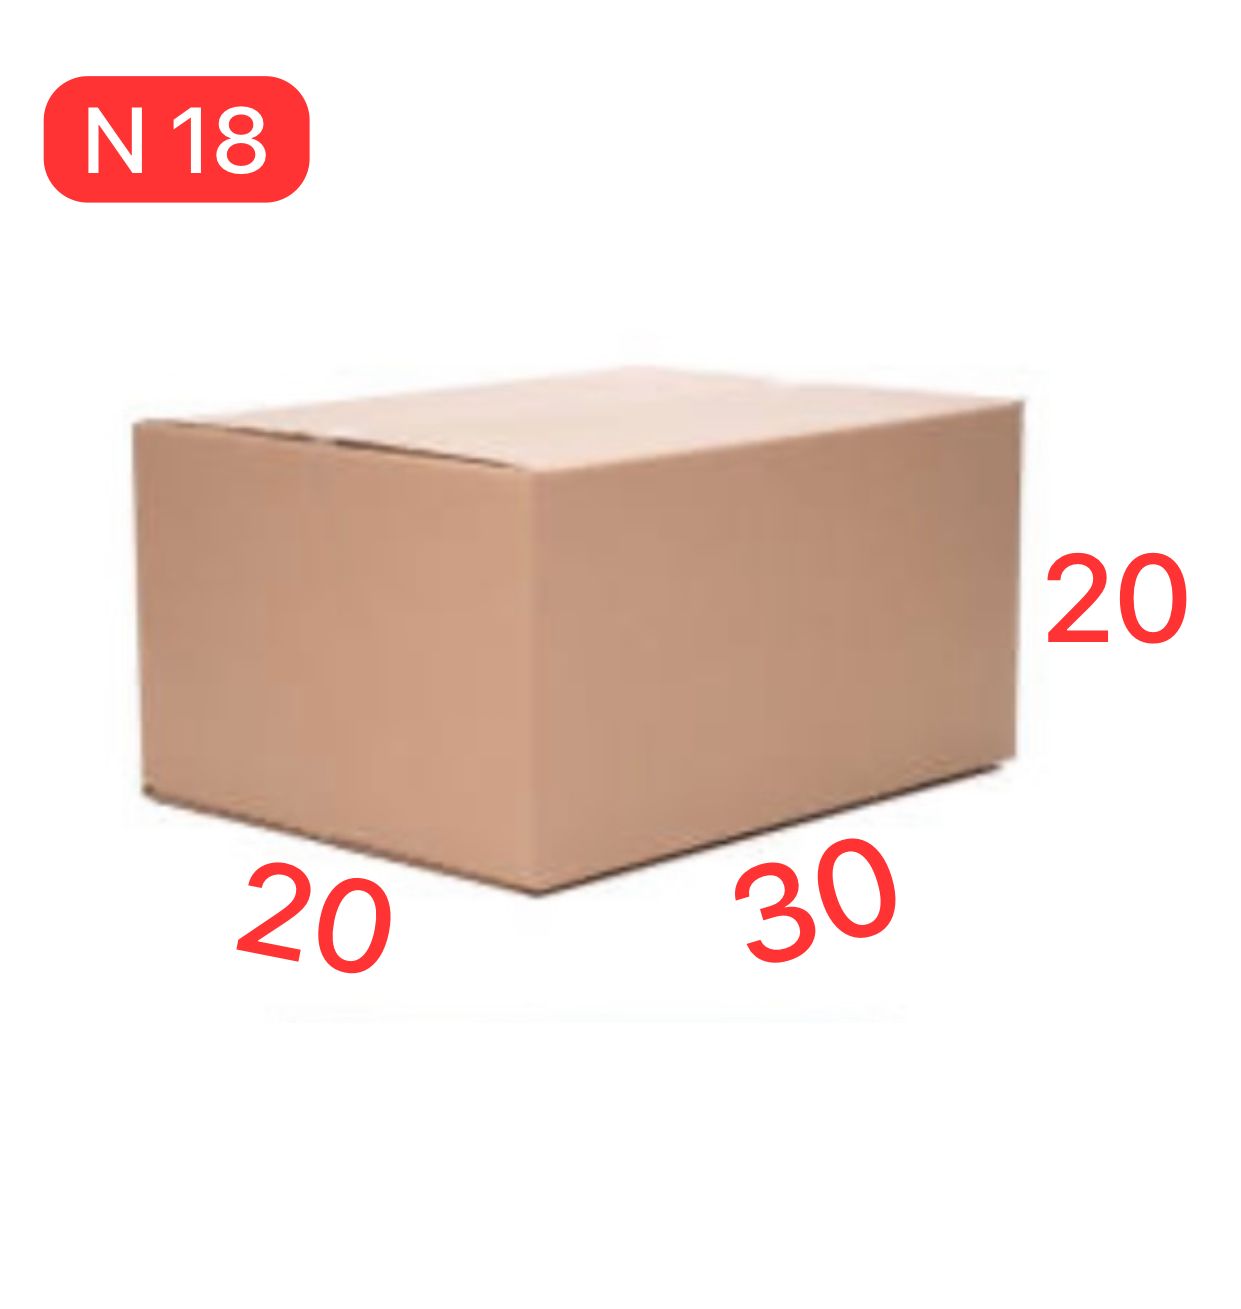 Caixa de Papelão N18 – 30x20x20